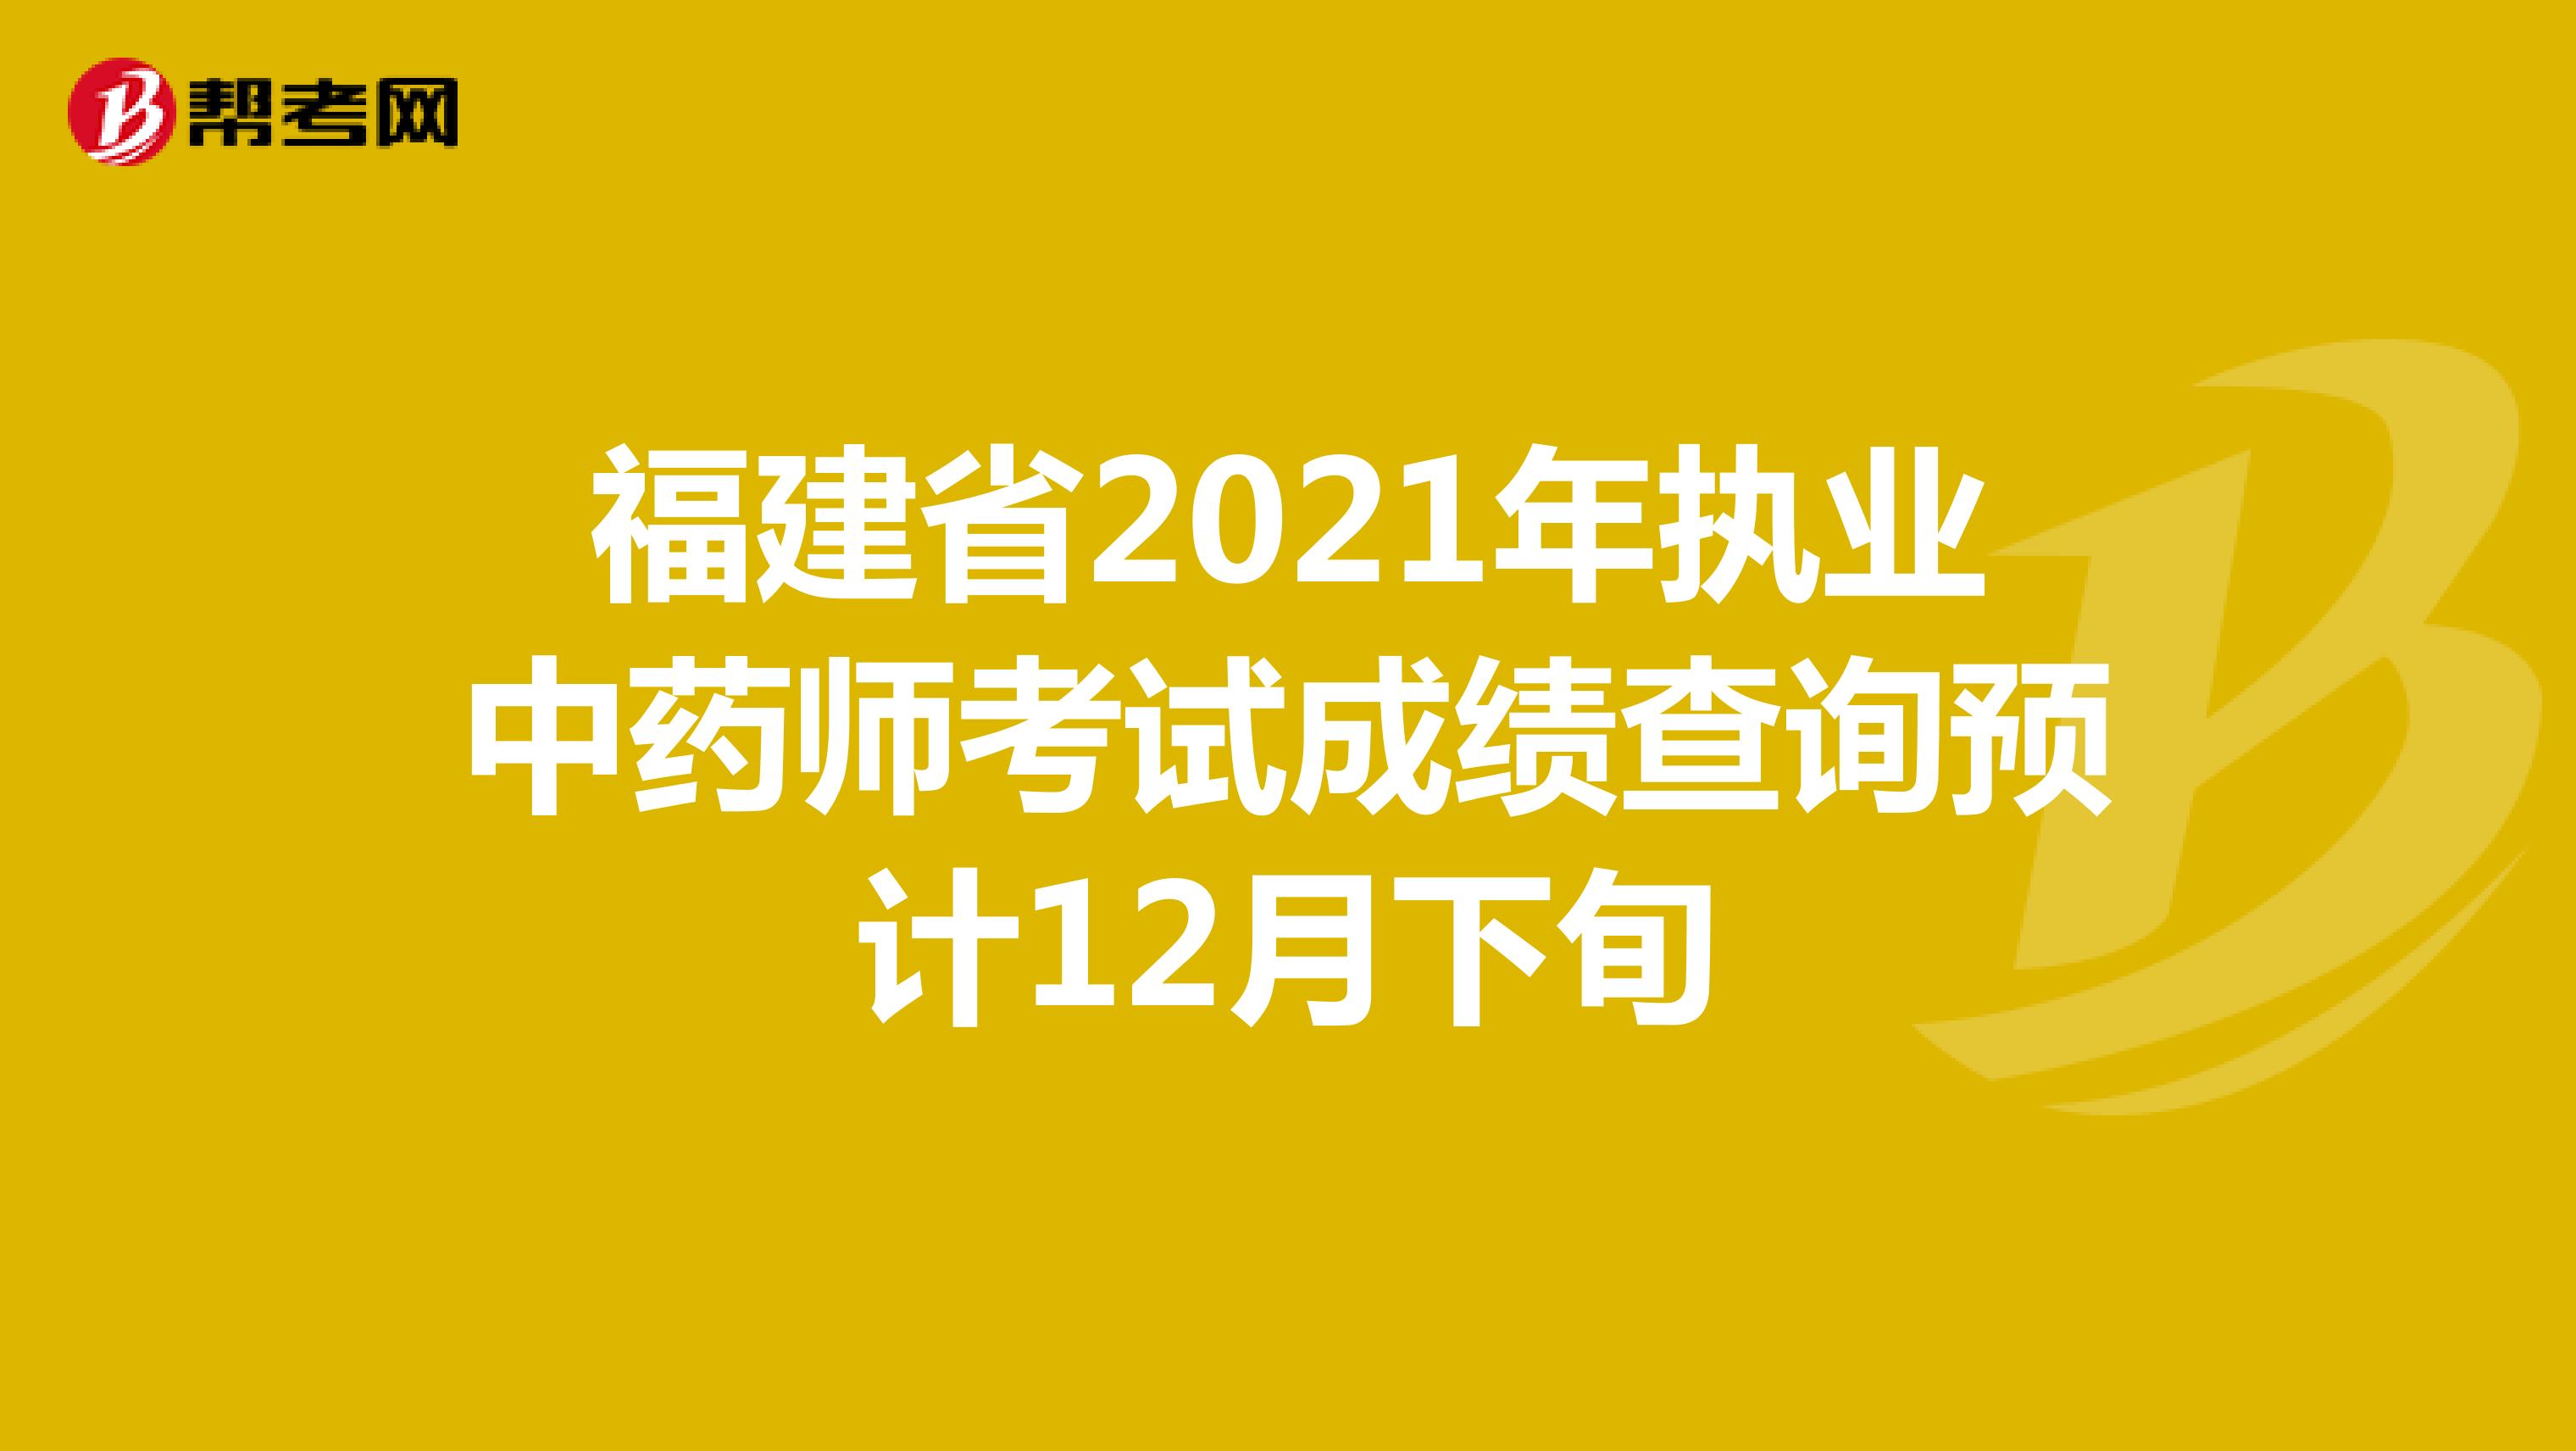 福建省2021年执业中药师考试成绩查询预计12月下旬